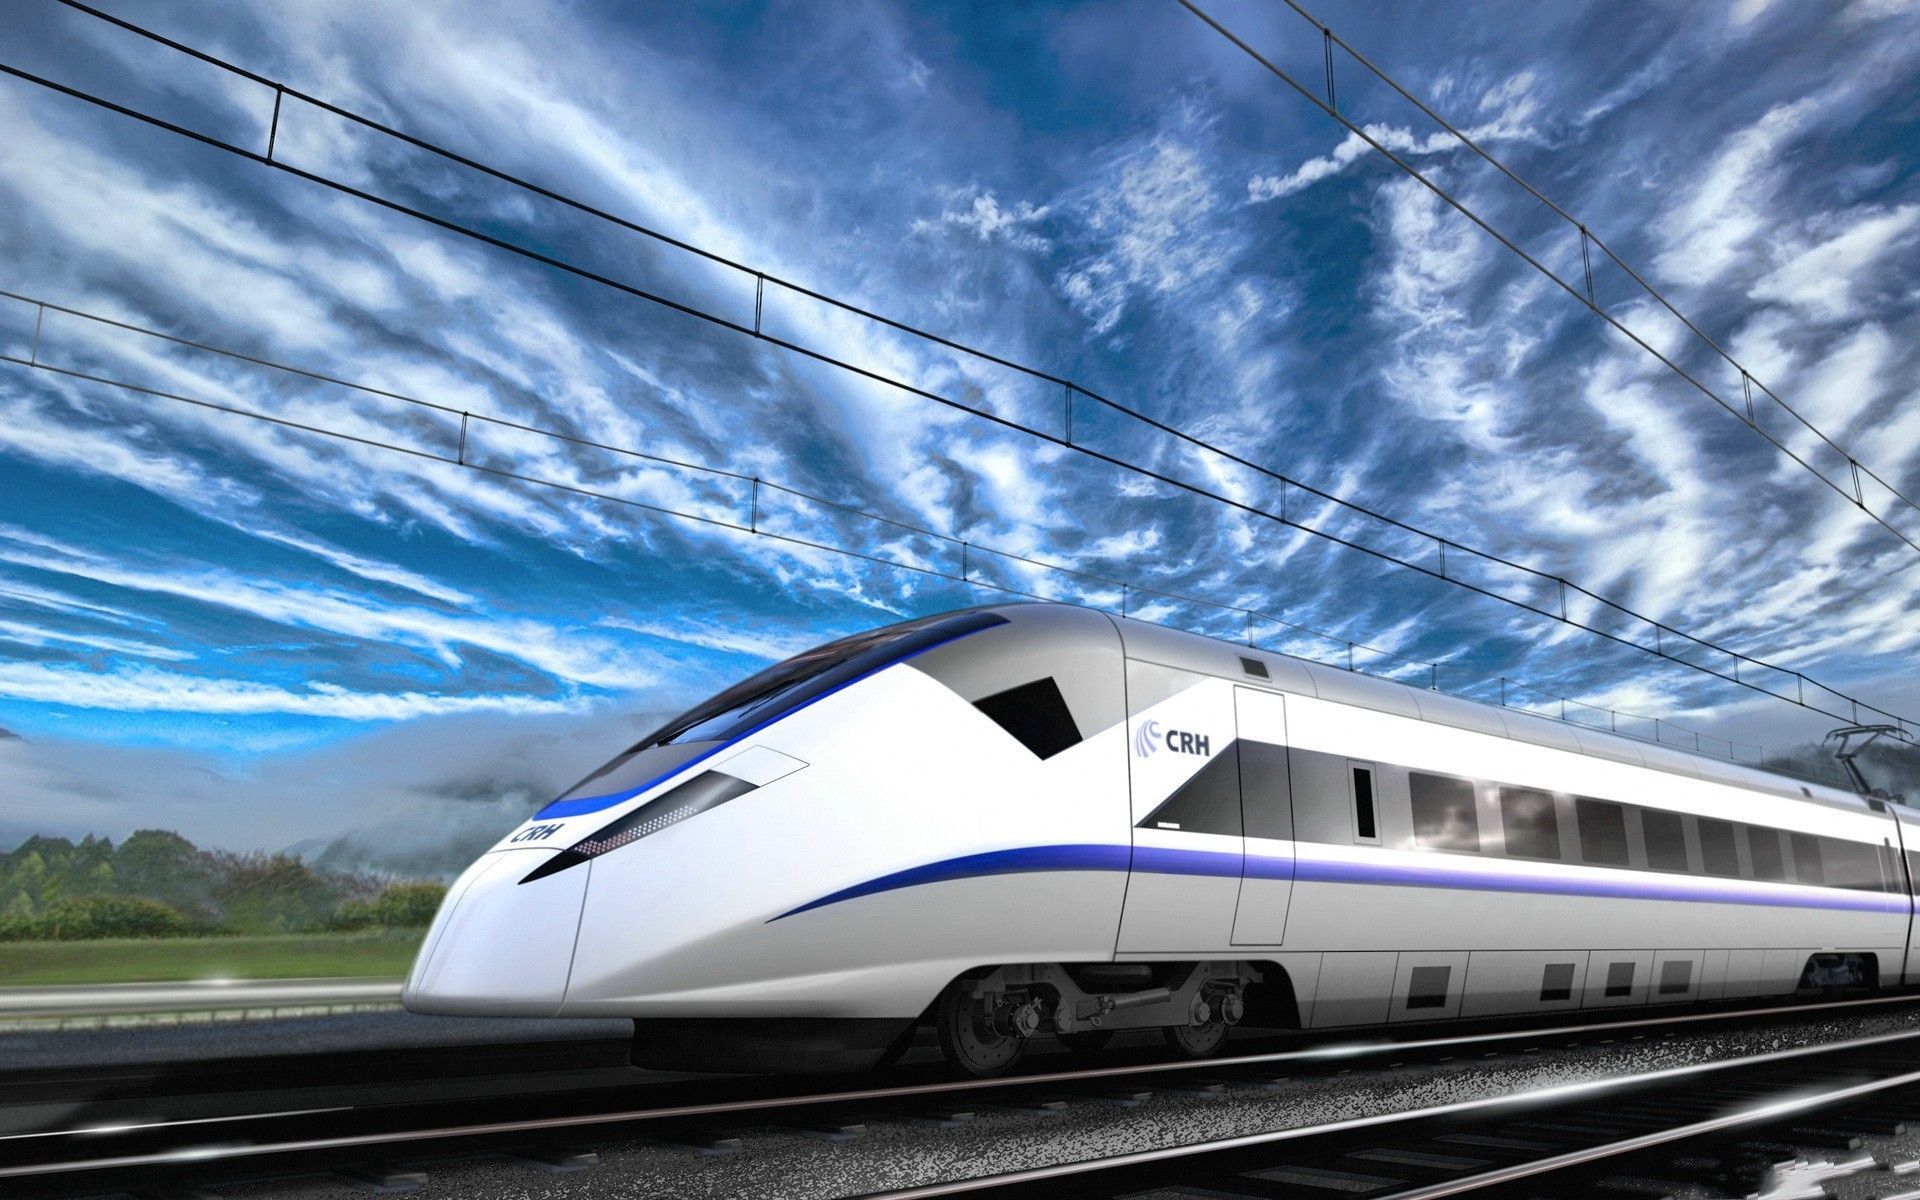 fond d'écran de train pour android,voie ferree a haute vitesse,chemin de fer,train,véhicule,matériel roulant